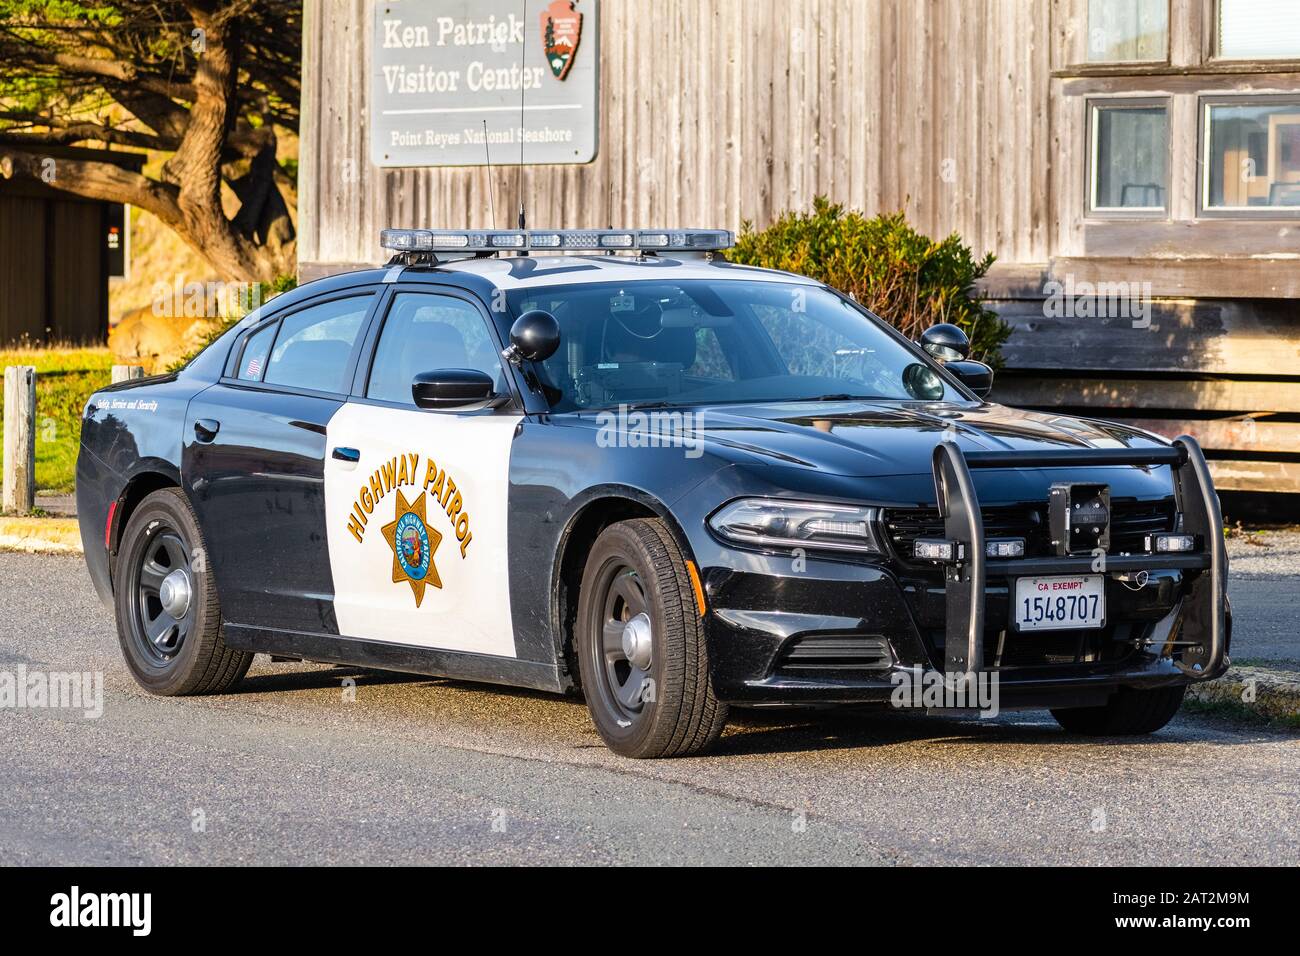 Januar 2020 Point Reyes/CA/USA - Highway Patrol Vehicle stationiert in Drakes Beach, Point Reyes; Die California Highway Patrol (CHP) ist der Bundesstaat l. Stockfoto